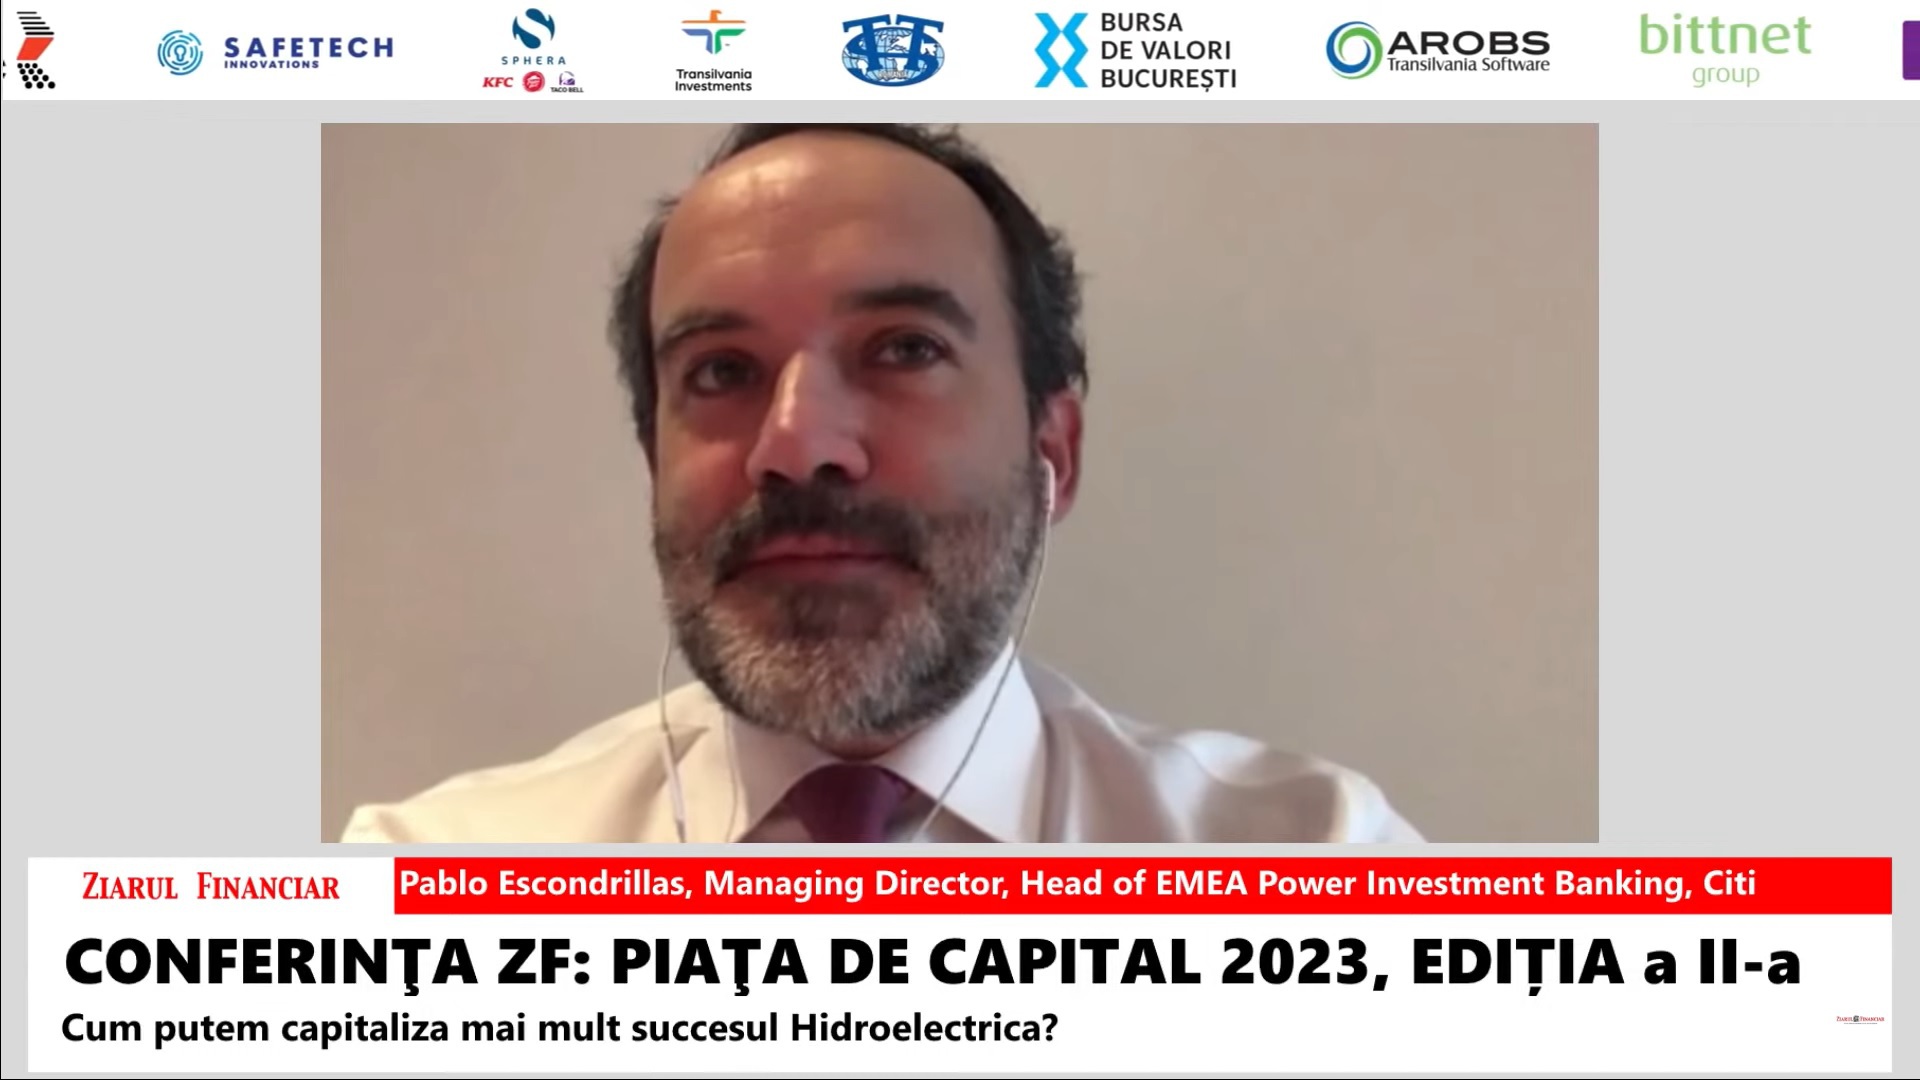 Pablo Escondrillas, Citi: Cred că IPO-ul Hidroelectrica a fost o parte importantă din repornirea pieţei IPO-urilor din Europa